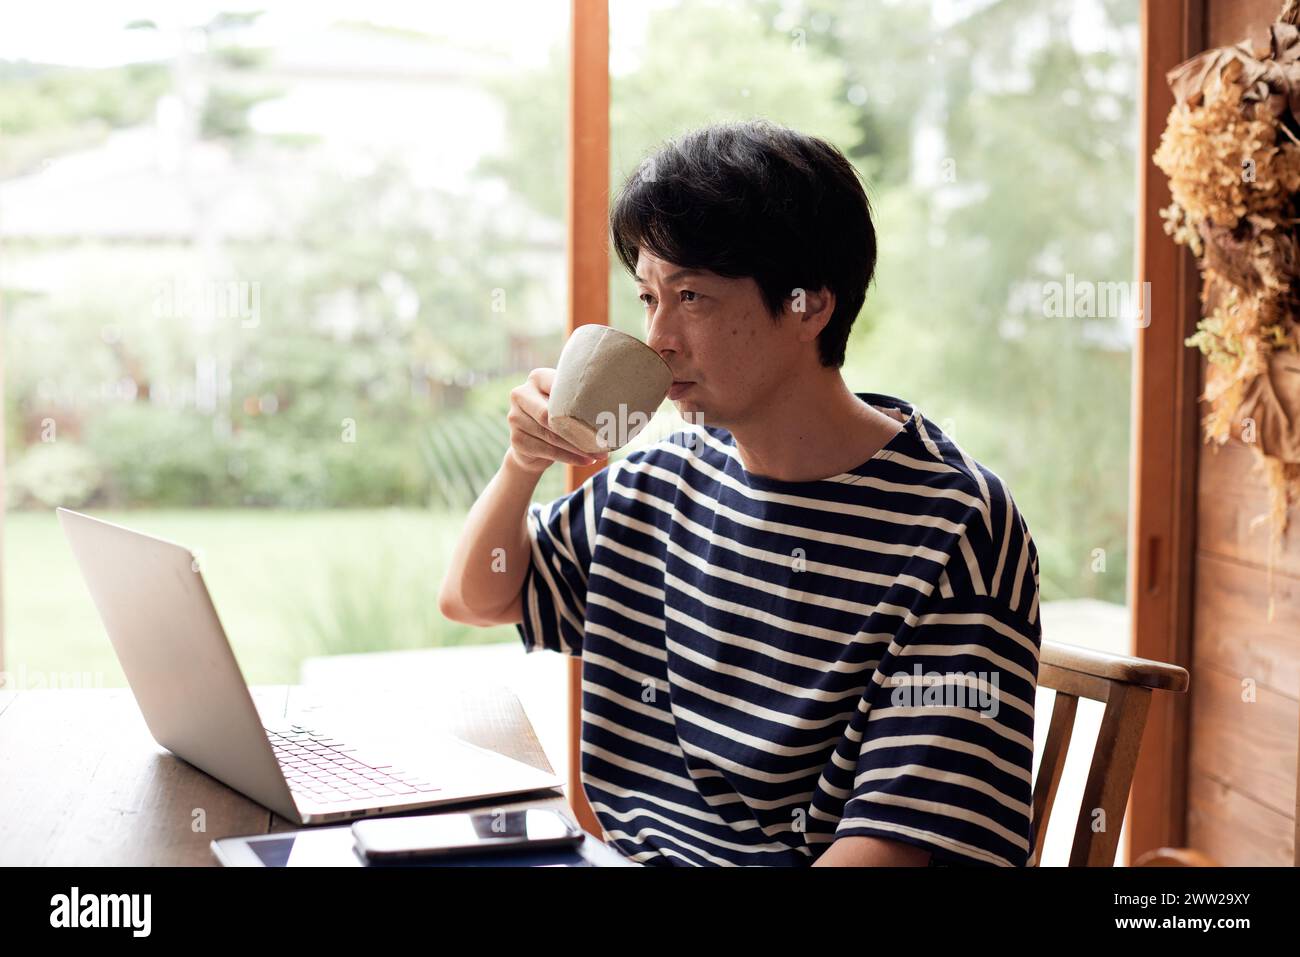 Ein Mann in einem gestreiften Hemd, der Kaffee trinkt, während er an seinem Laptop arbeitet Stockfoto